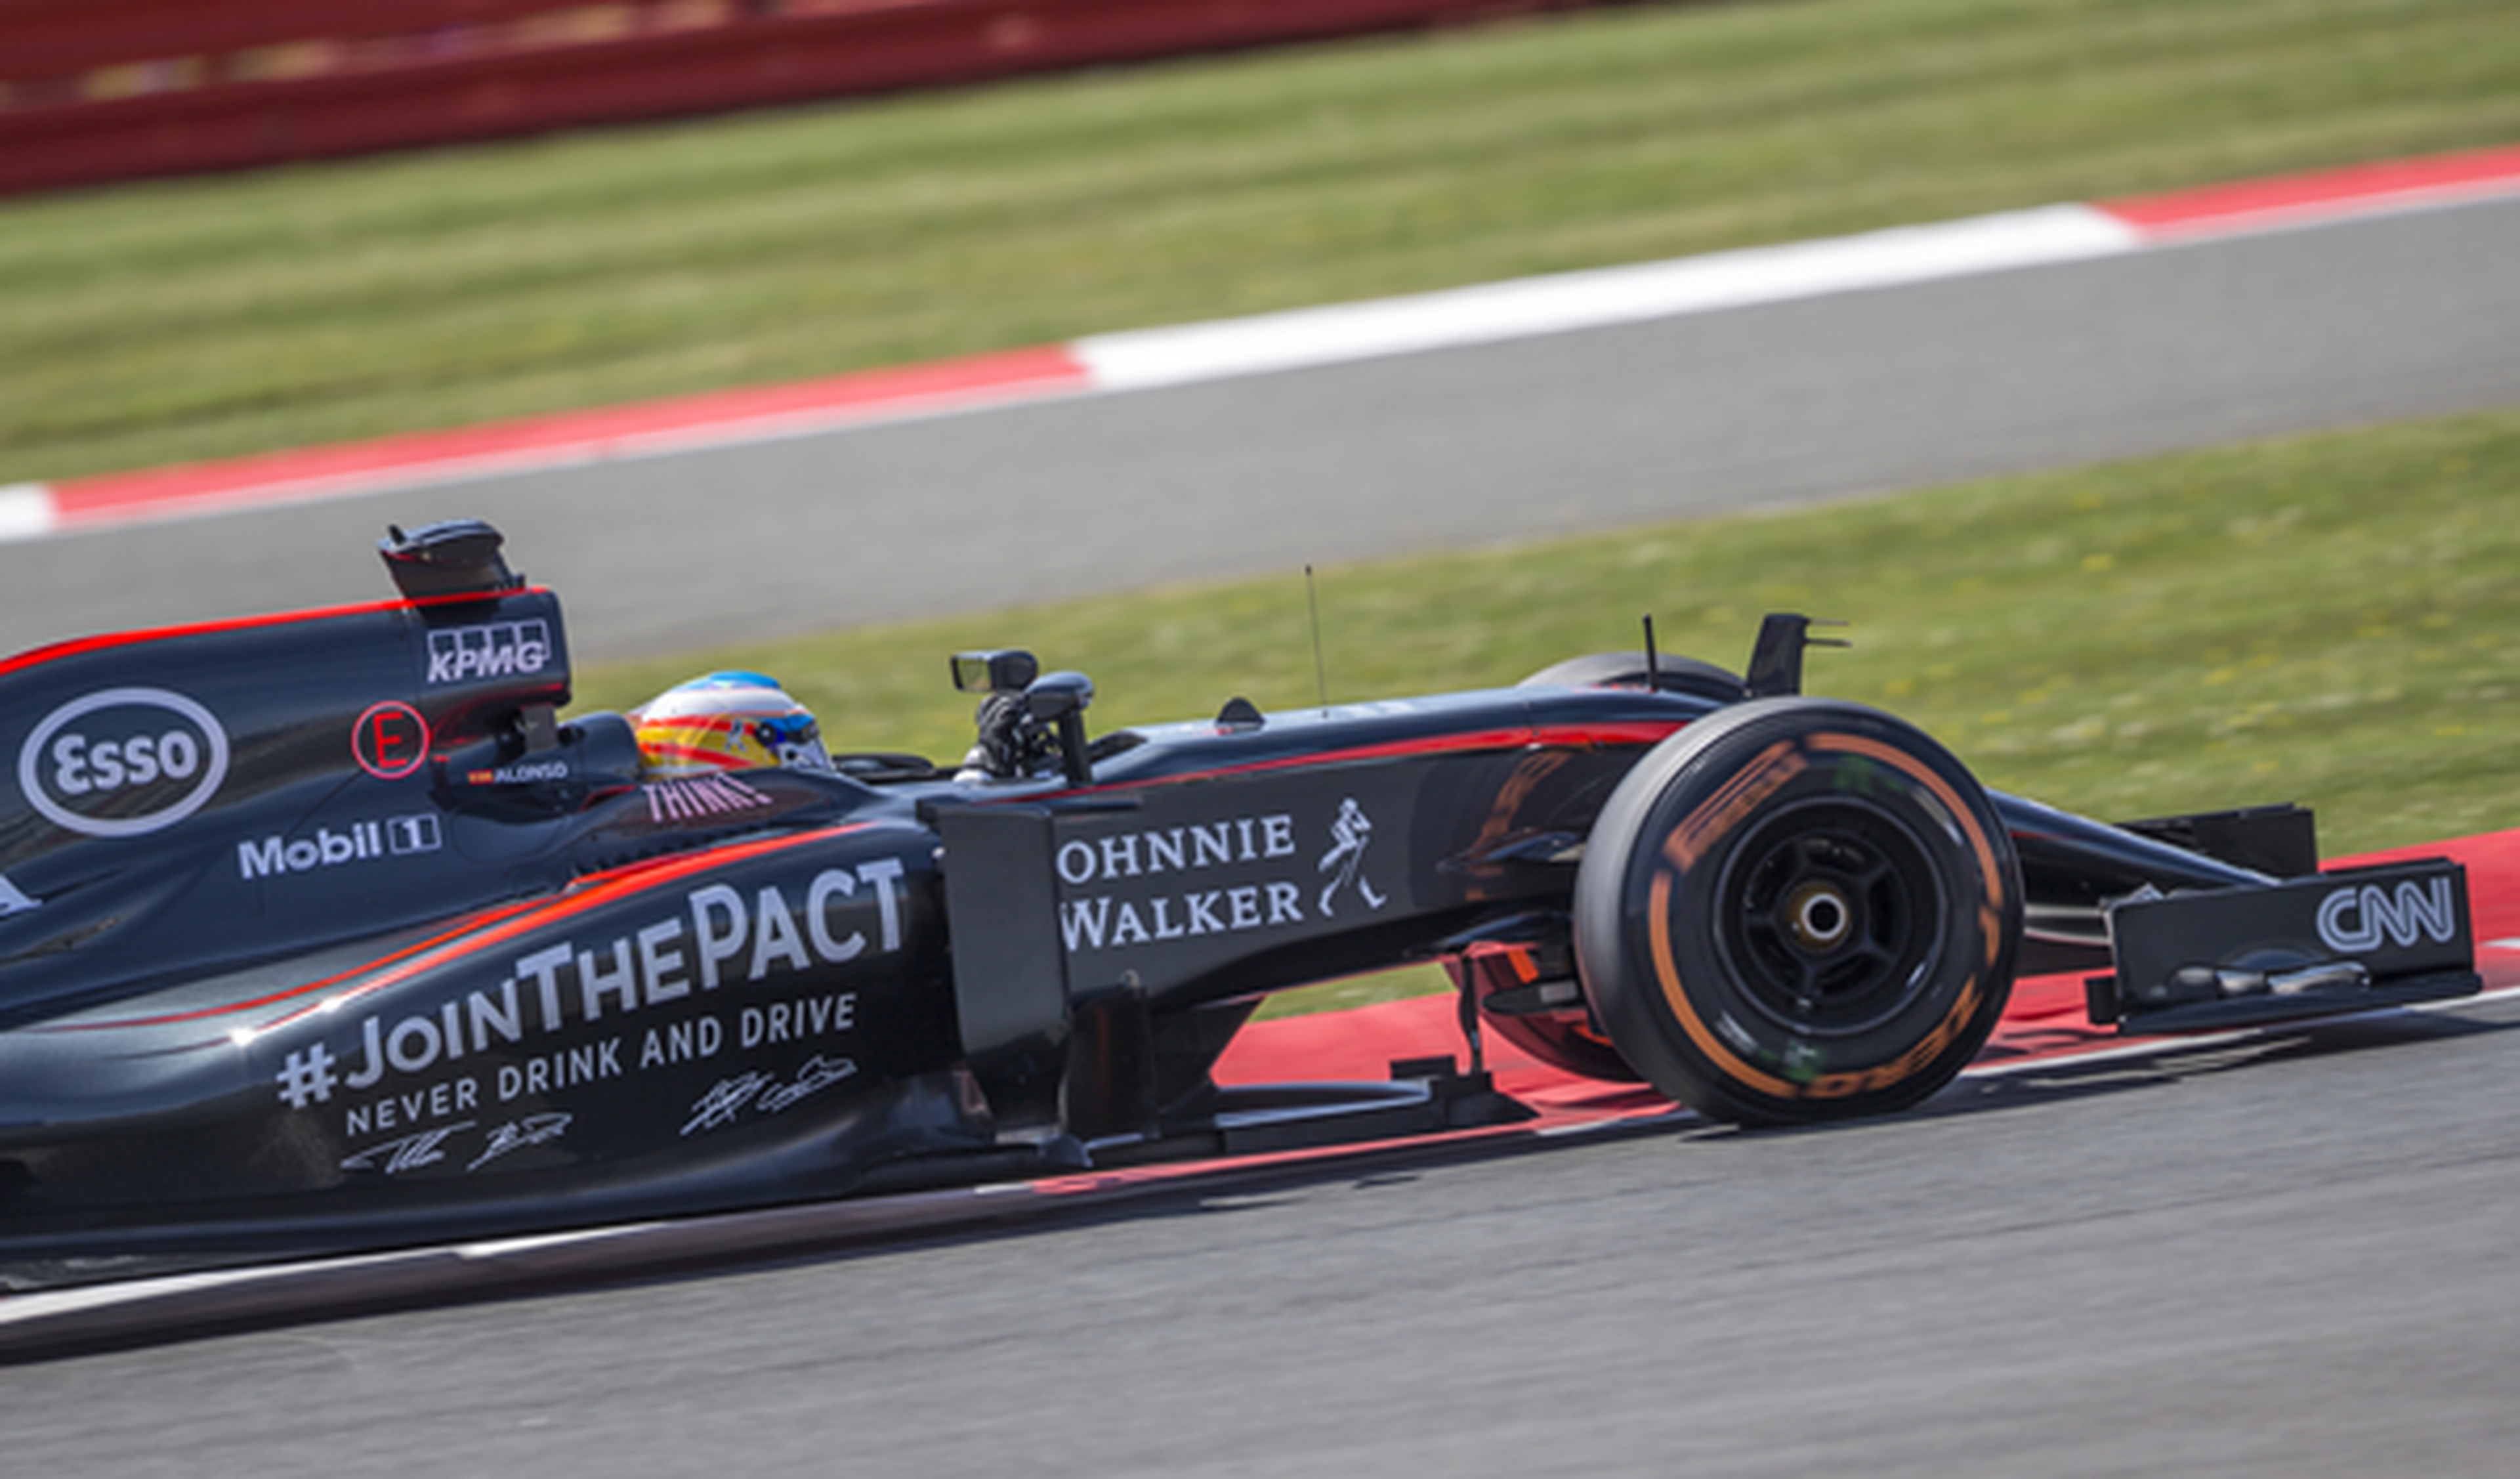 Johnnie Walker seguirá siendo patrocinador de McLaren